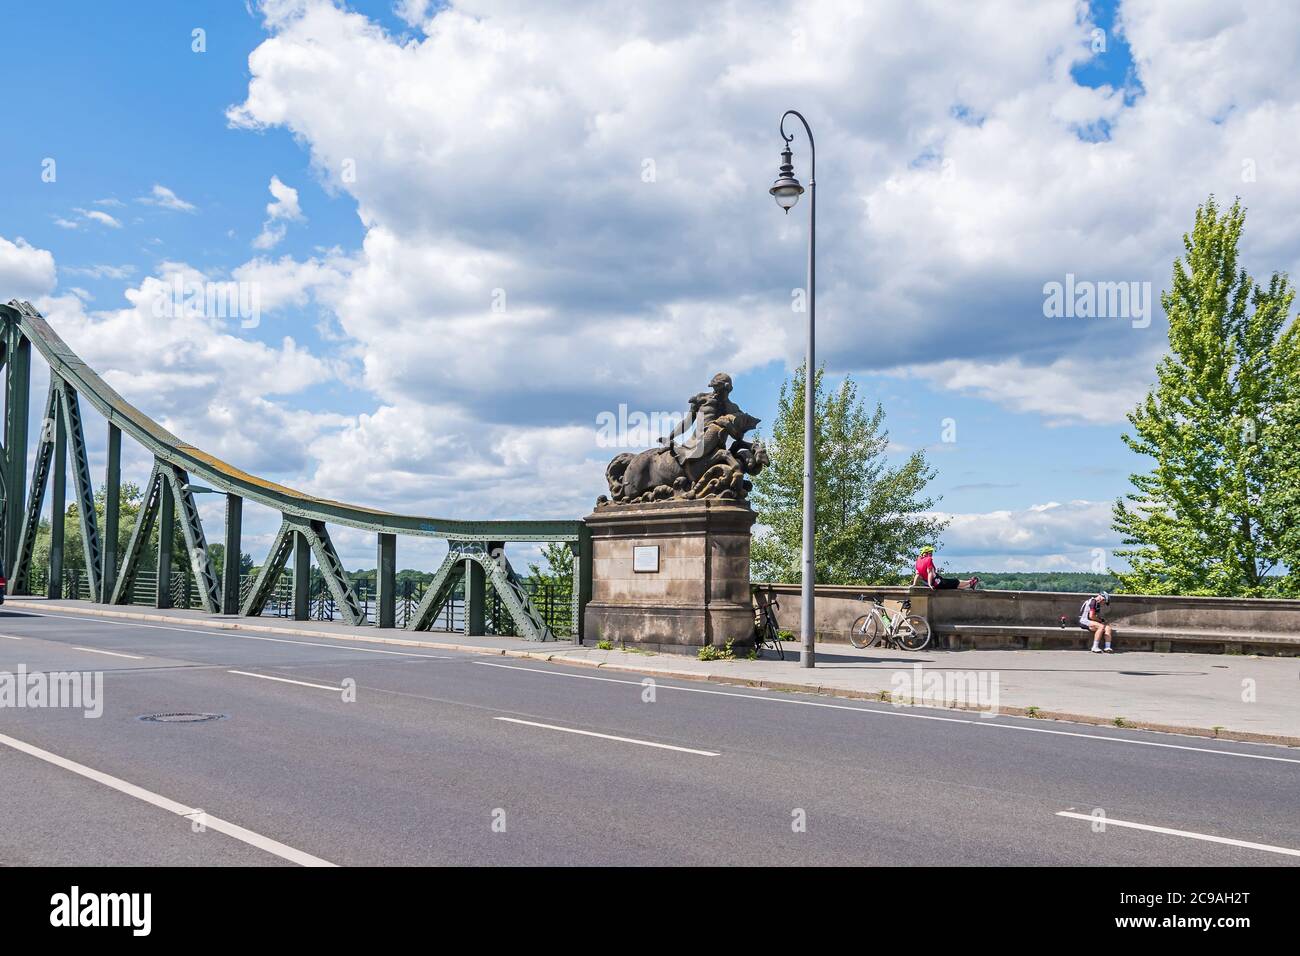 Potsdam, Allemagne - 12 juillet 2020 : le pont Glienicke, le célèbre pont des espions, vu de Berlin, avec la sculpture Centaur de Stephan Walter et deux bi Banque D'Images